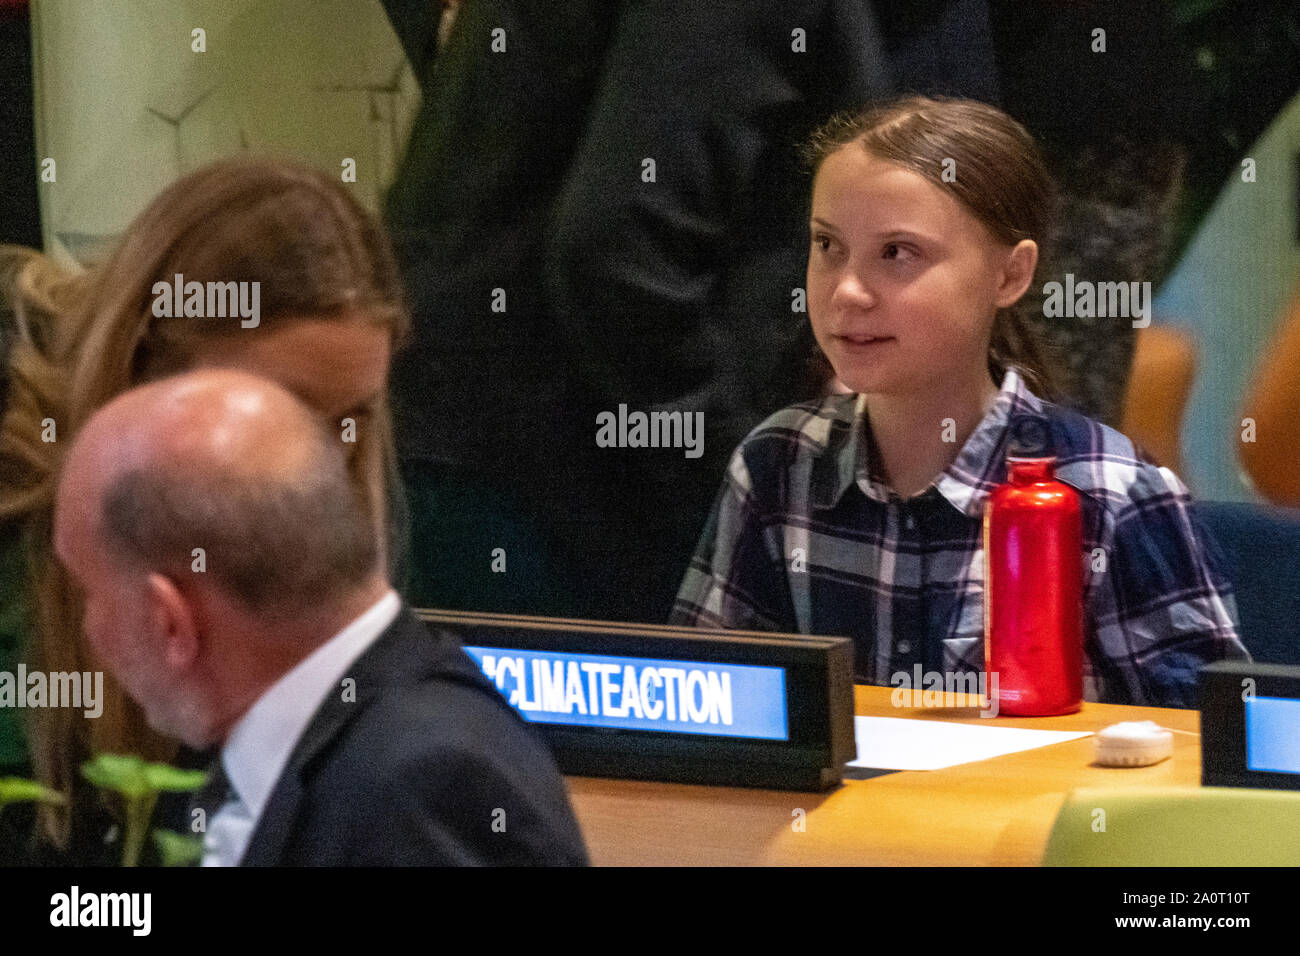 Nueva York, Estados Unidos, 21 de septiembre de 2019. Activista ambiental sueca Greta Thunberg en el inicio de la Cumbre del Clima de la juventud en la Sede de Naciones Unidas en Nueva York. Crédito: Enrique Shore/Alamy Live News Foto de stock